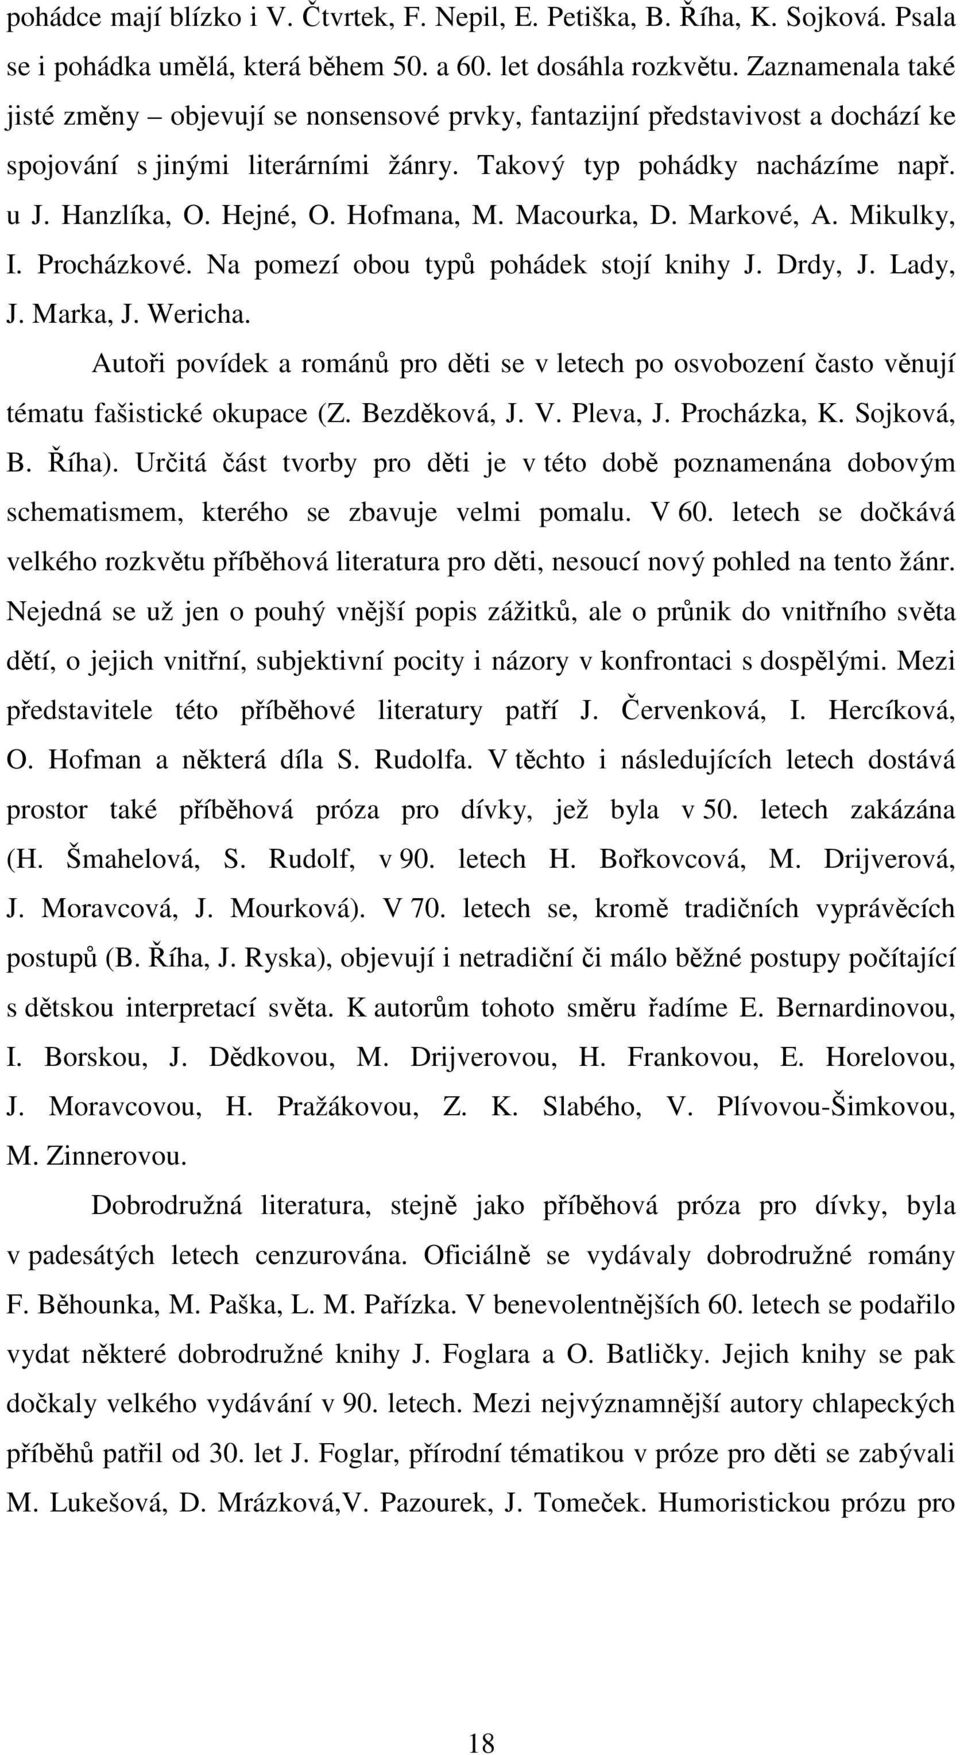 Hofmana, M. Macourka, D. Markové, A. Mikulky, I. Procházkové. Na pomezí obou typů pohádek stojí knihy J. Drdy, J. Lady, J. Marka, J. Wericha.